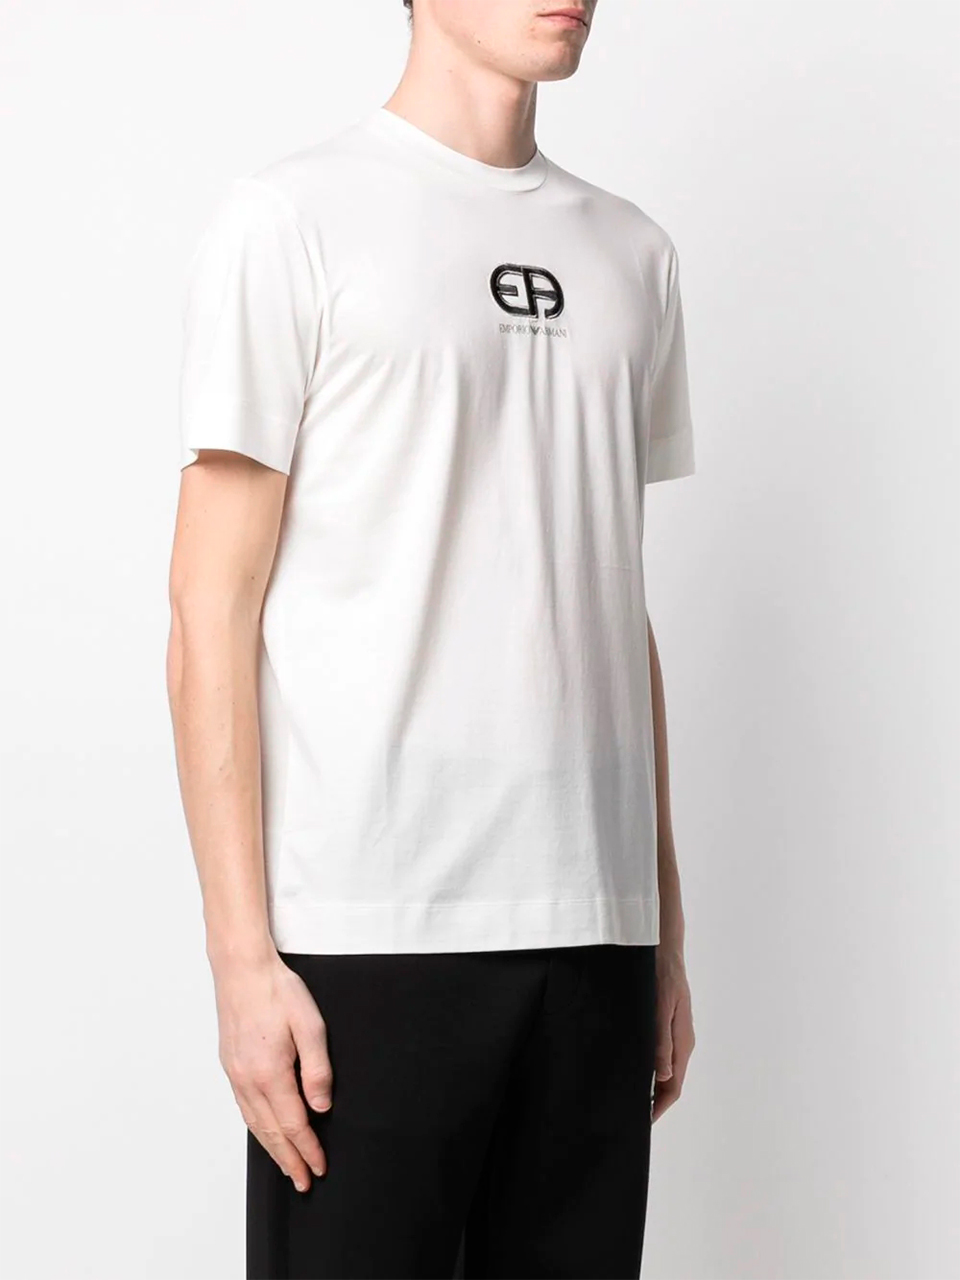 Imagem de: Camiseta Emporio Armani Branca com Logo Bordado